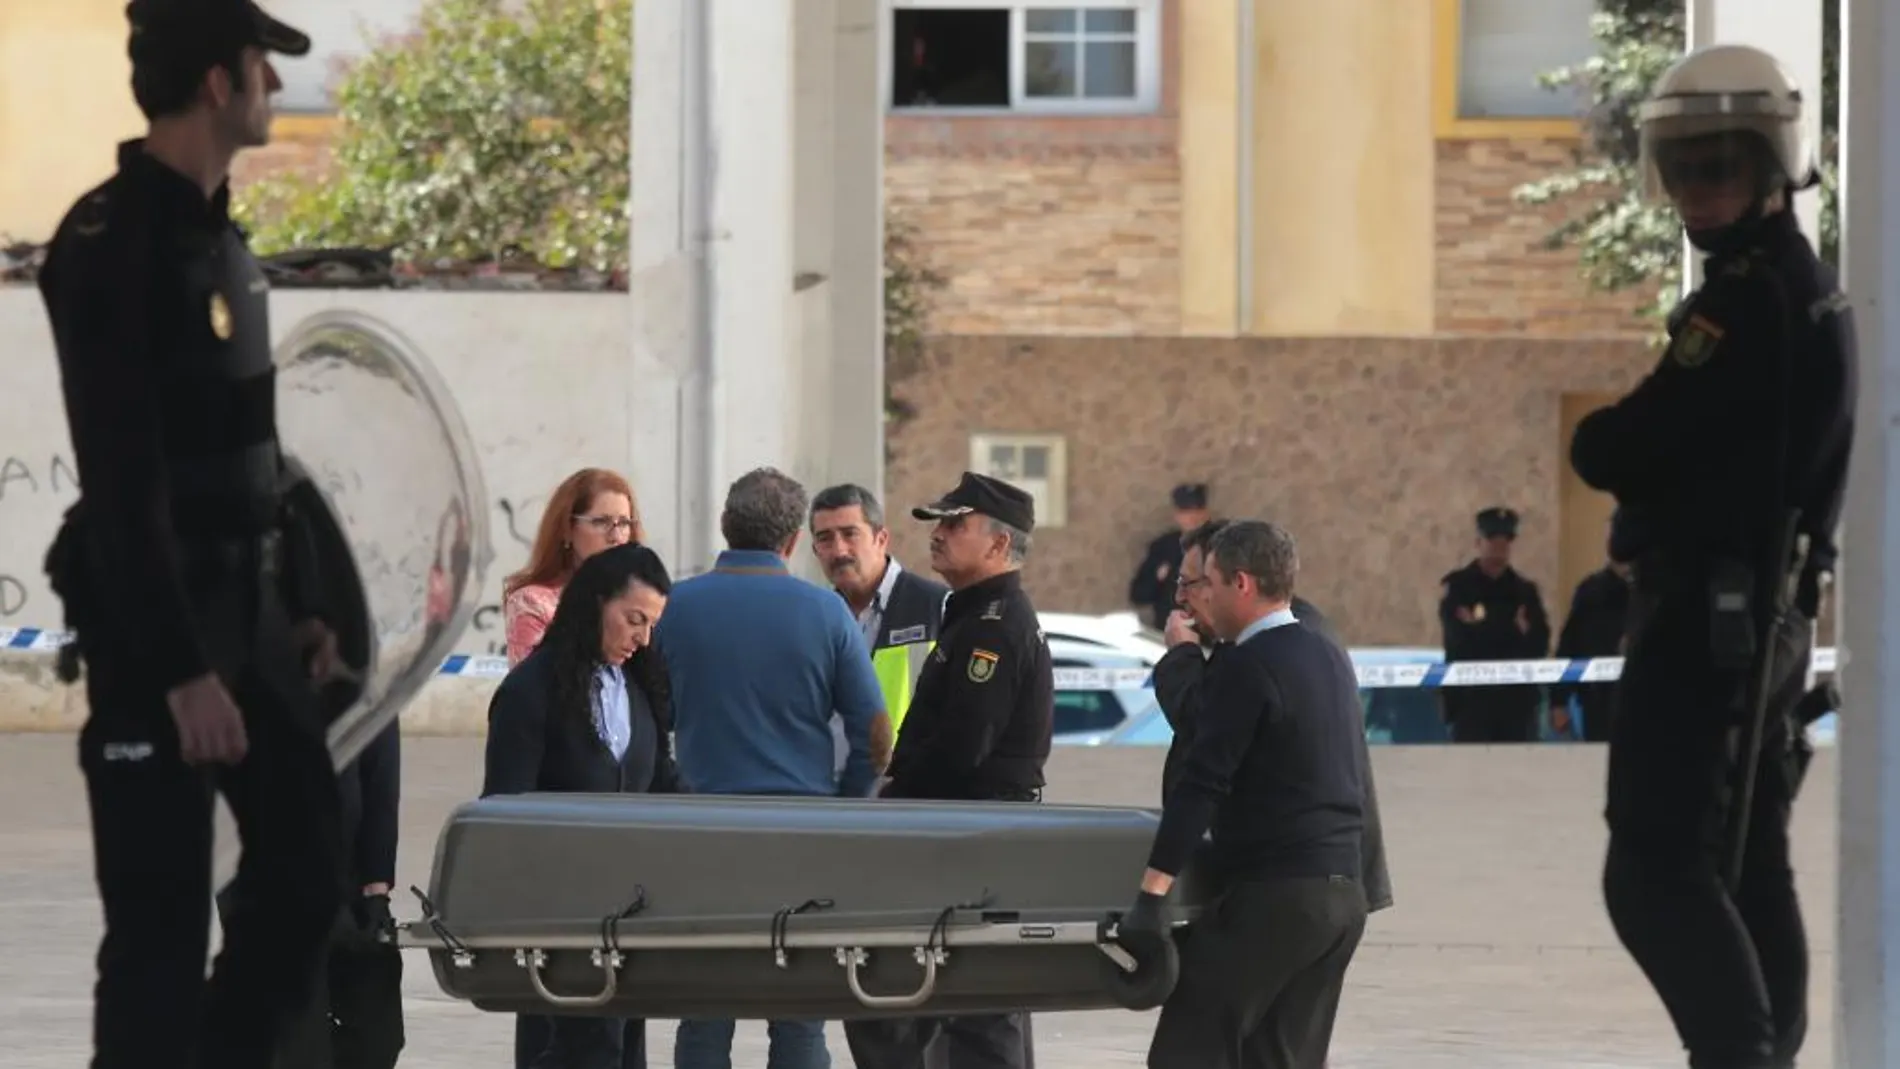 Operarios trasladan el féretro con los restos mortales del joven de origen marroquí que ha fallecido en el transcurso de un tiroteo